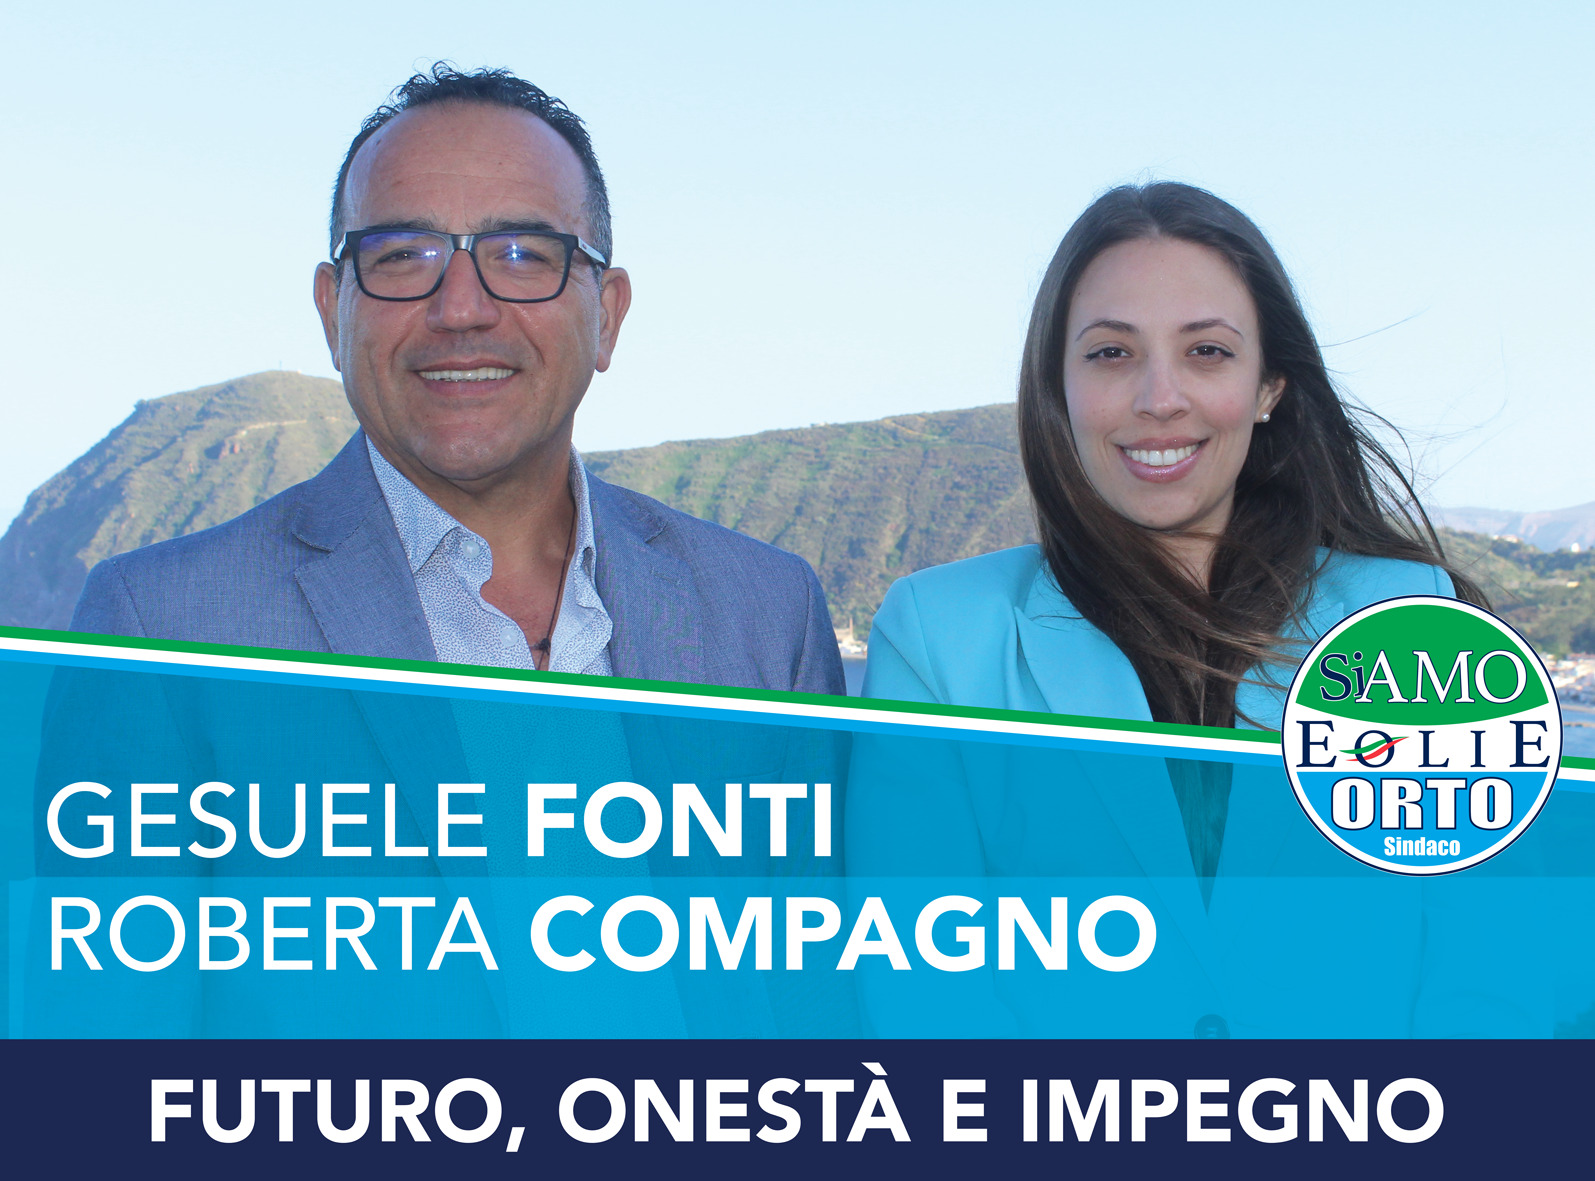 Candidati al Consiglio comunale Orto Sindaco : Gesuele Fonti e Roberta Compagno